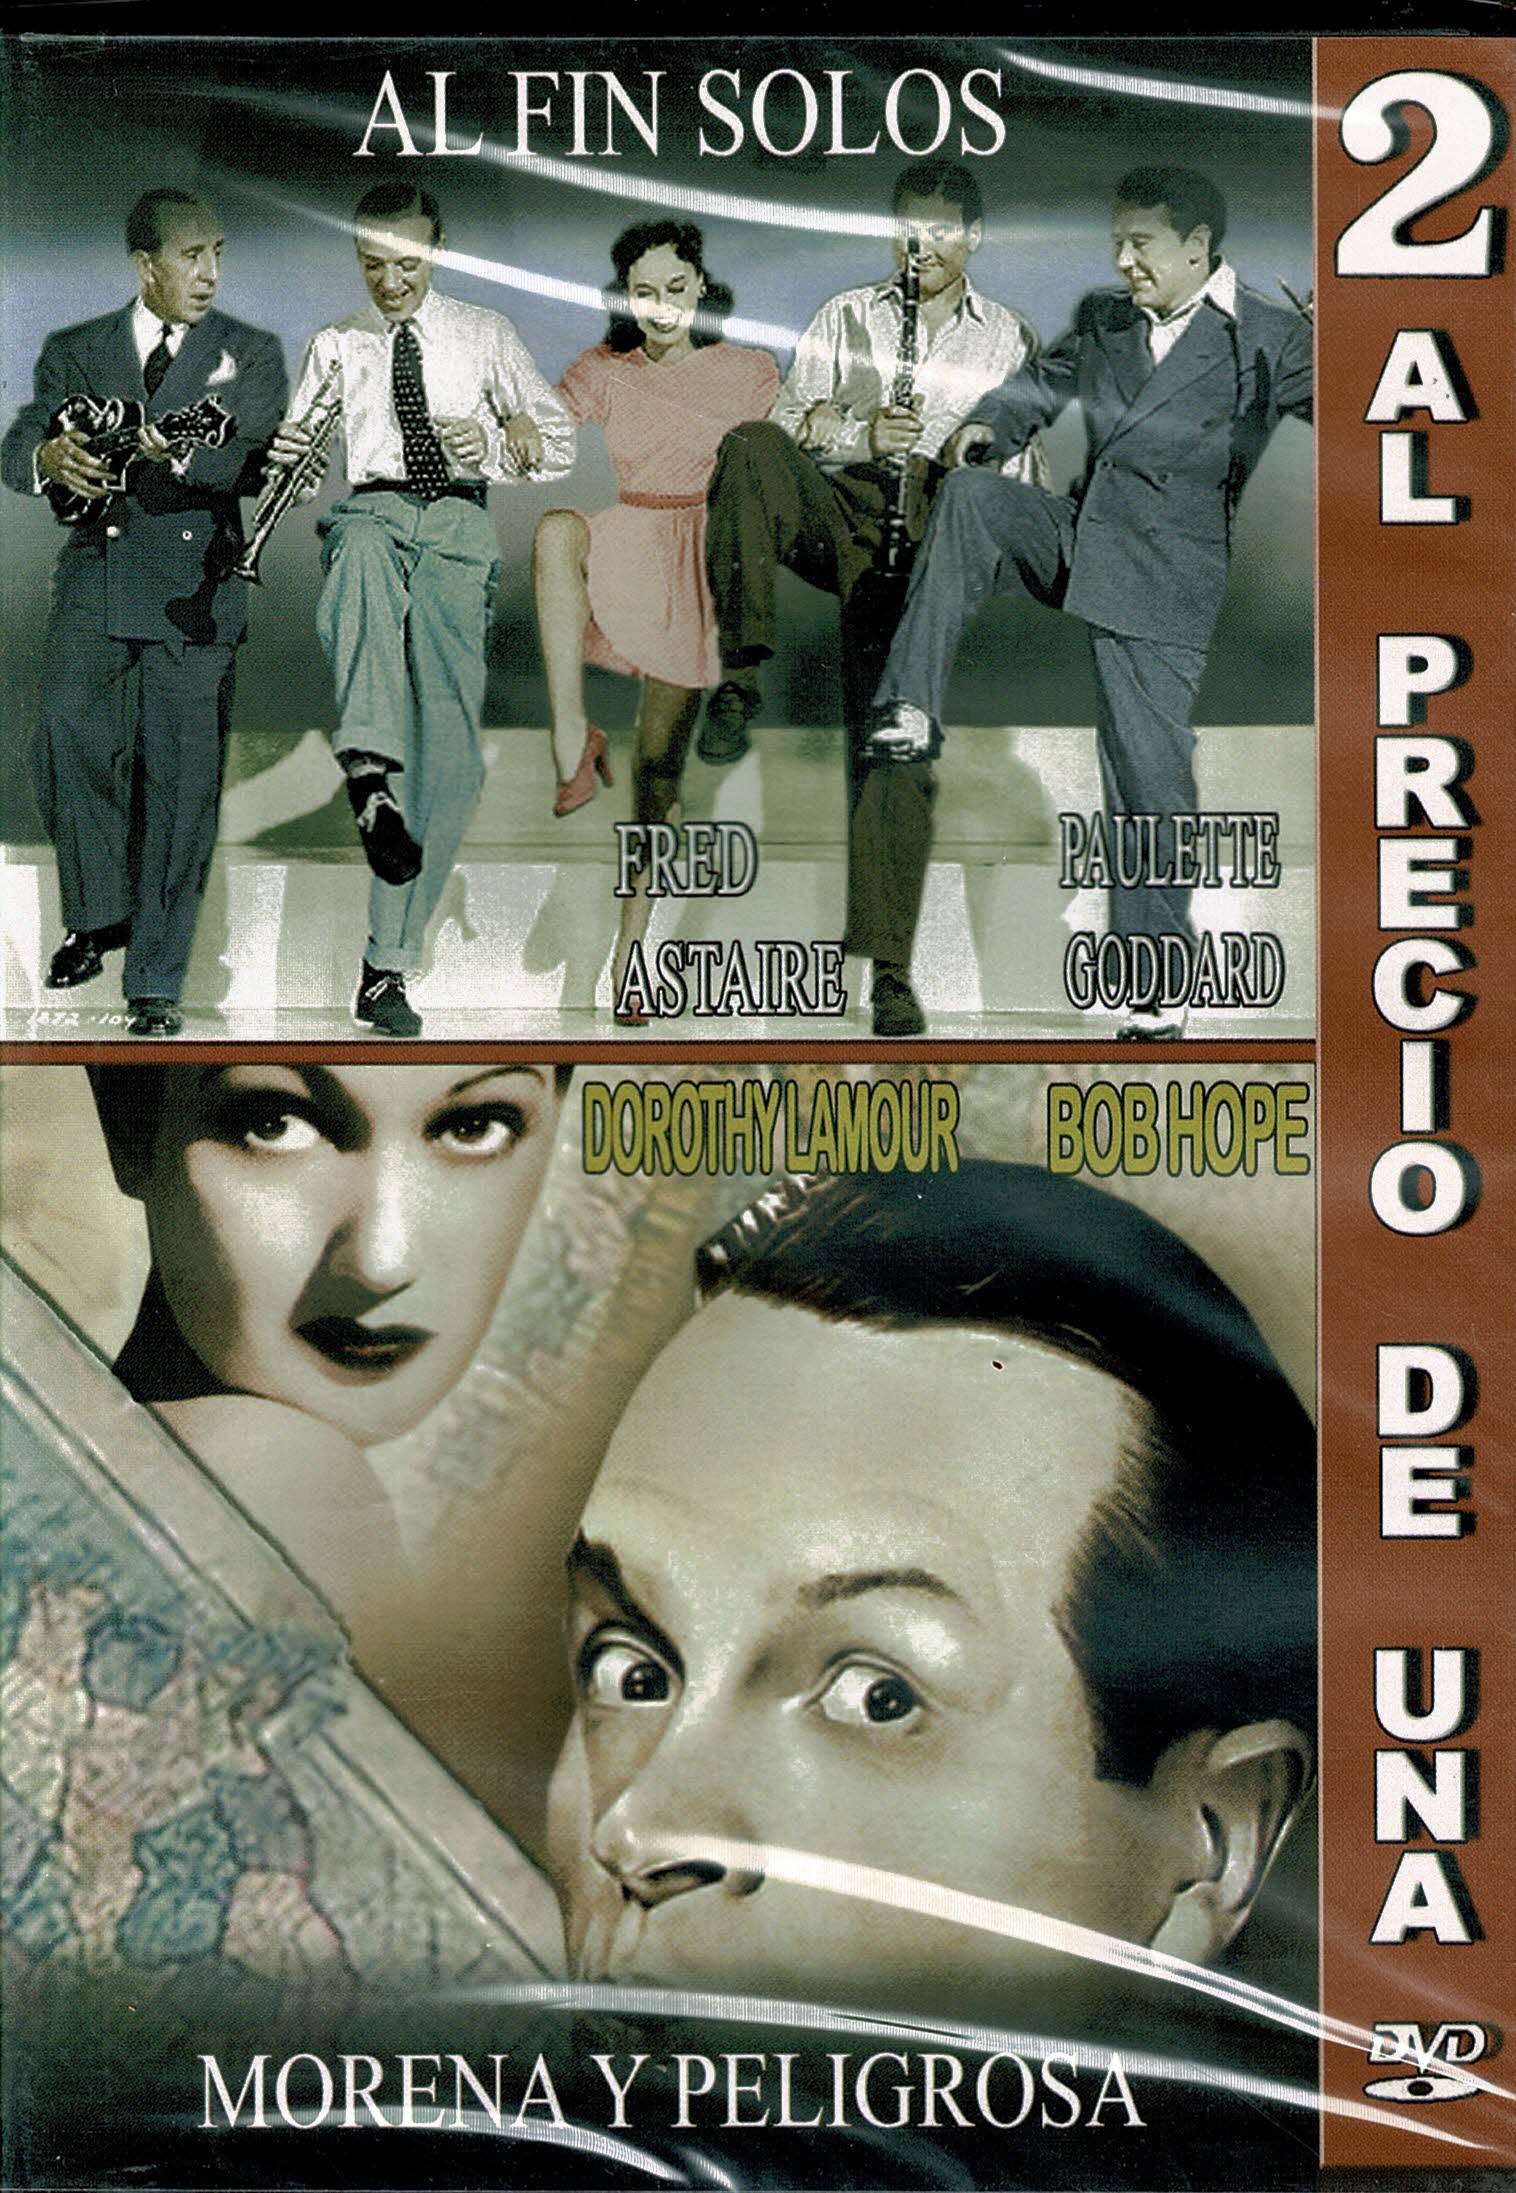 Al Fin Solos   (1940)  , Morena y Peligrosa  (1947) 2x1